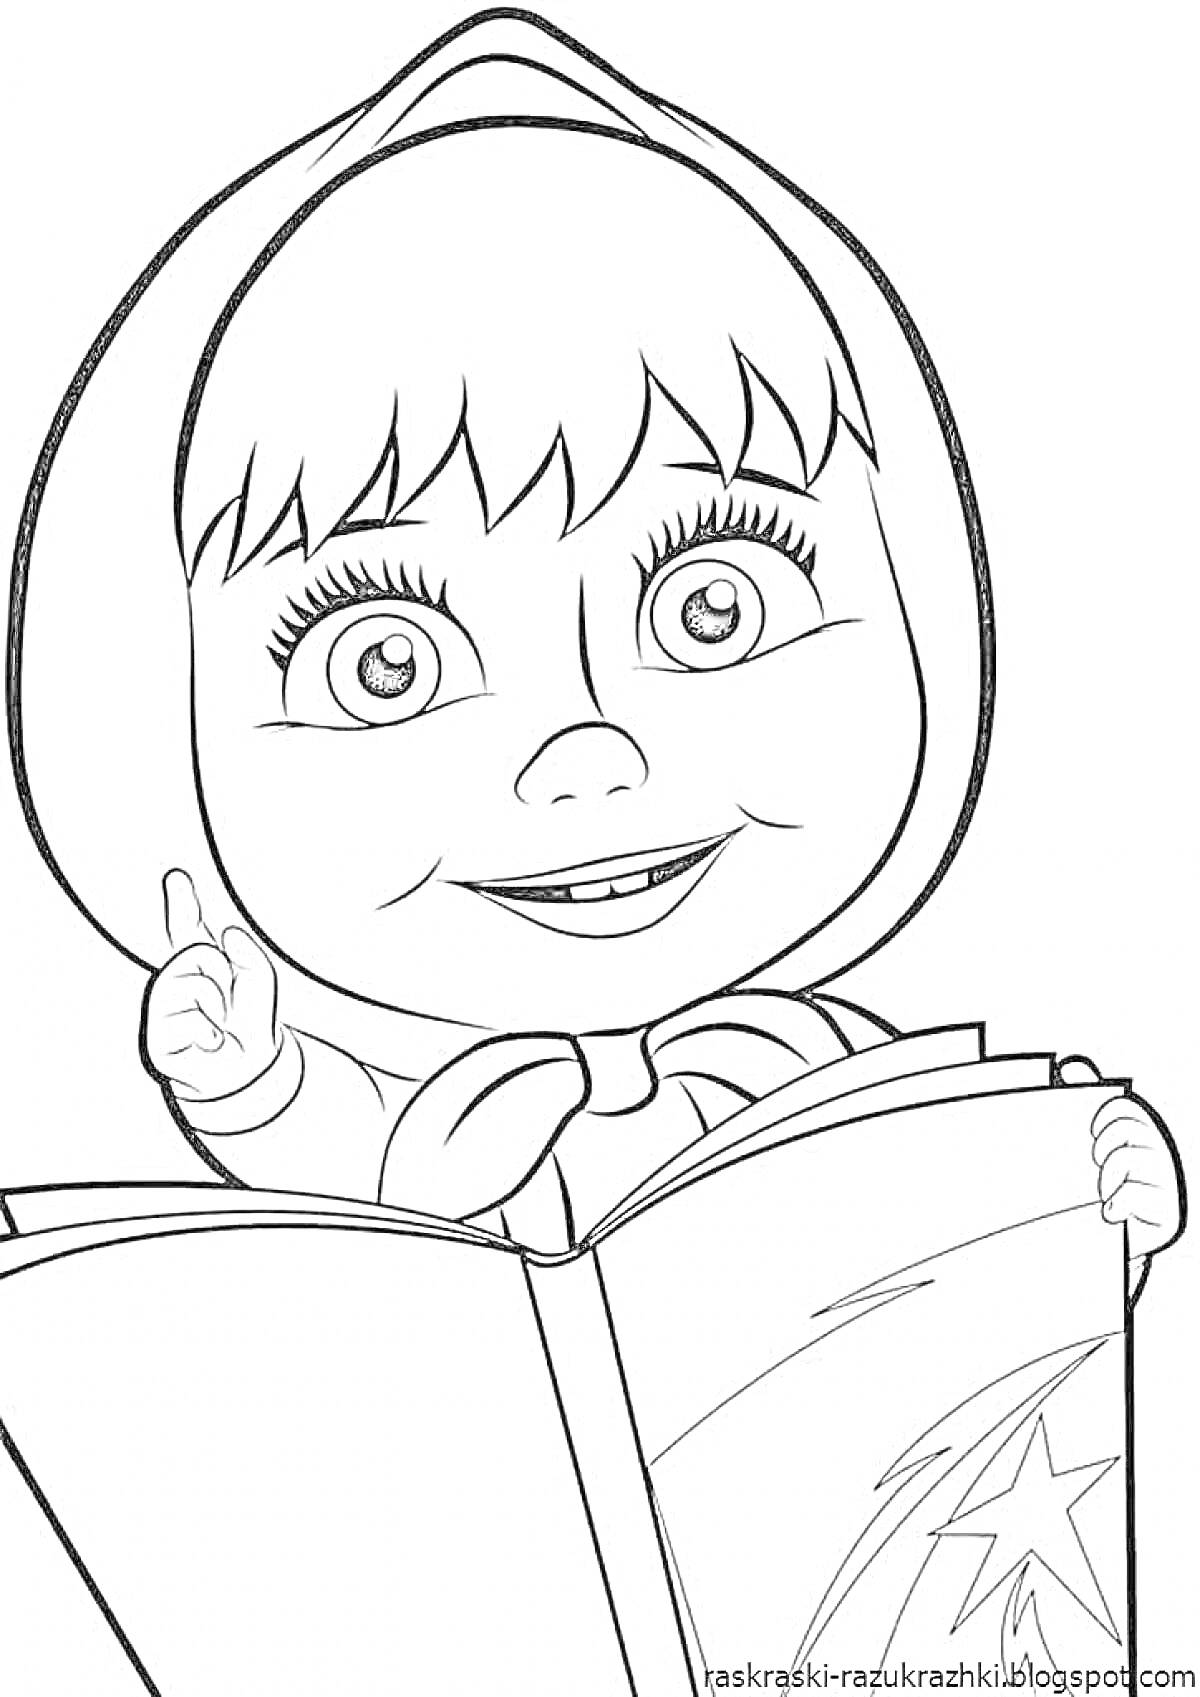 Раскраска Девочка с большими глазами в косынке пальцем указывает в книгу с изображением звезды